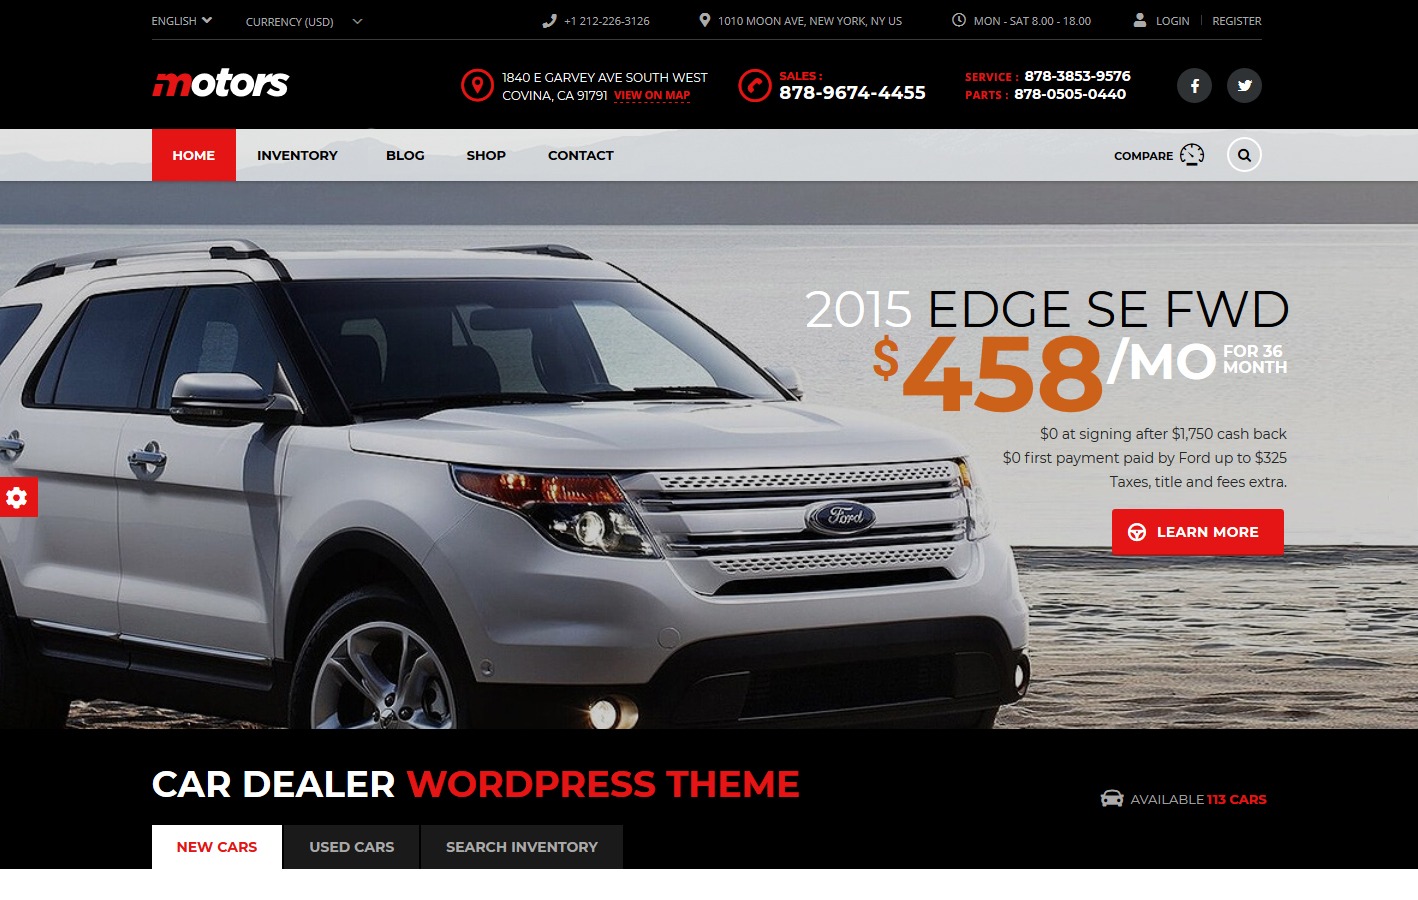 Wordpress Legend Car Dealership Websites